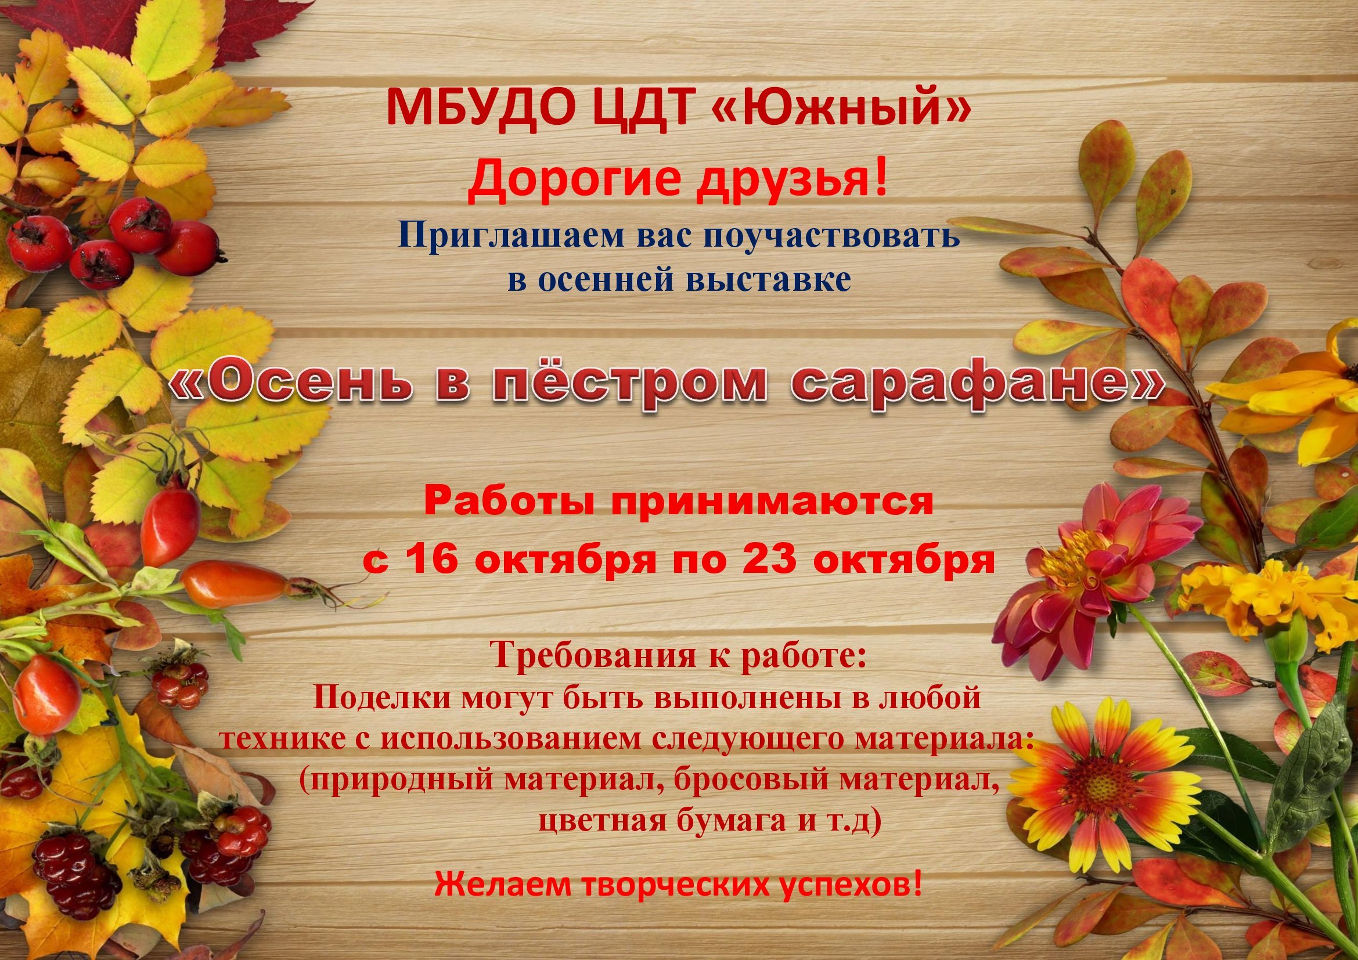 Осенняя выставка «Осень в пестром сарафане»